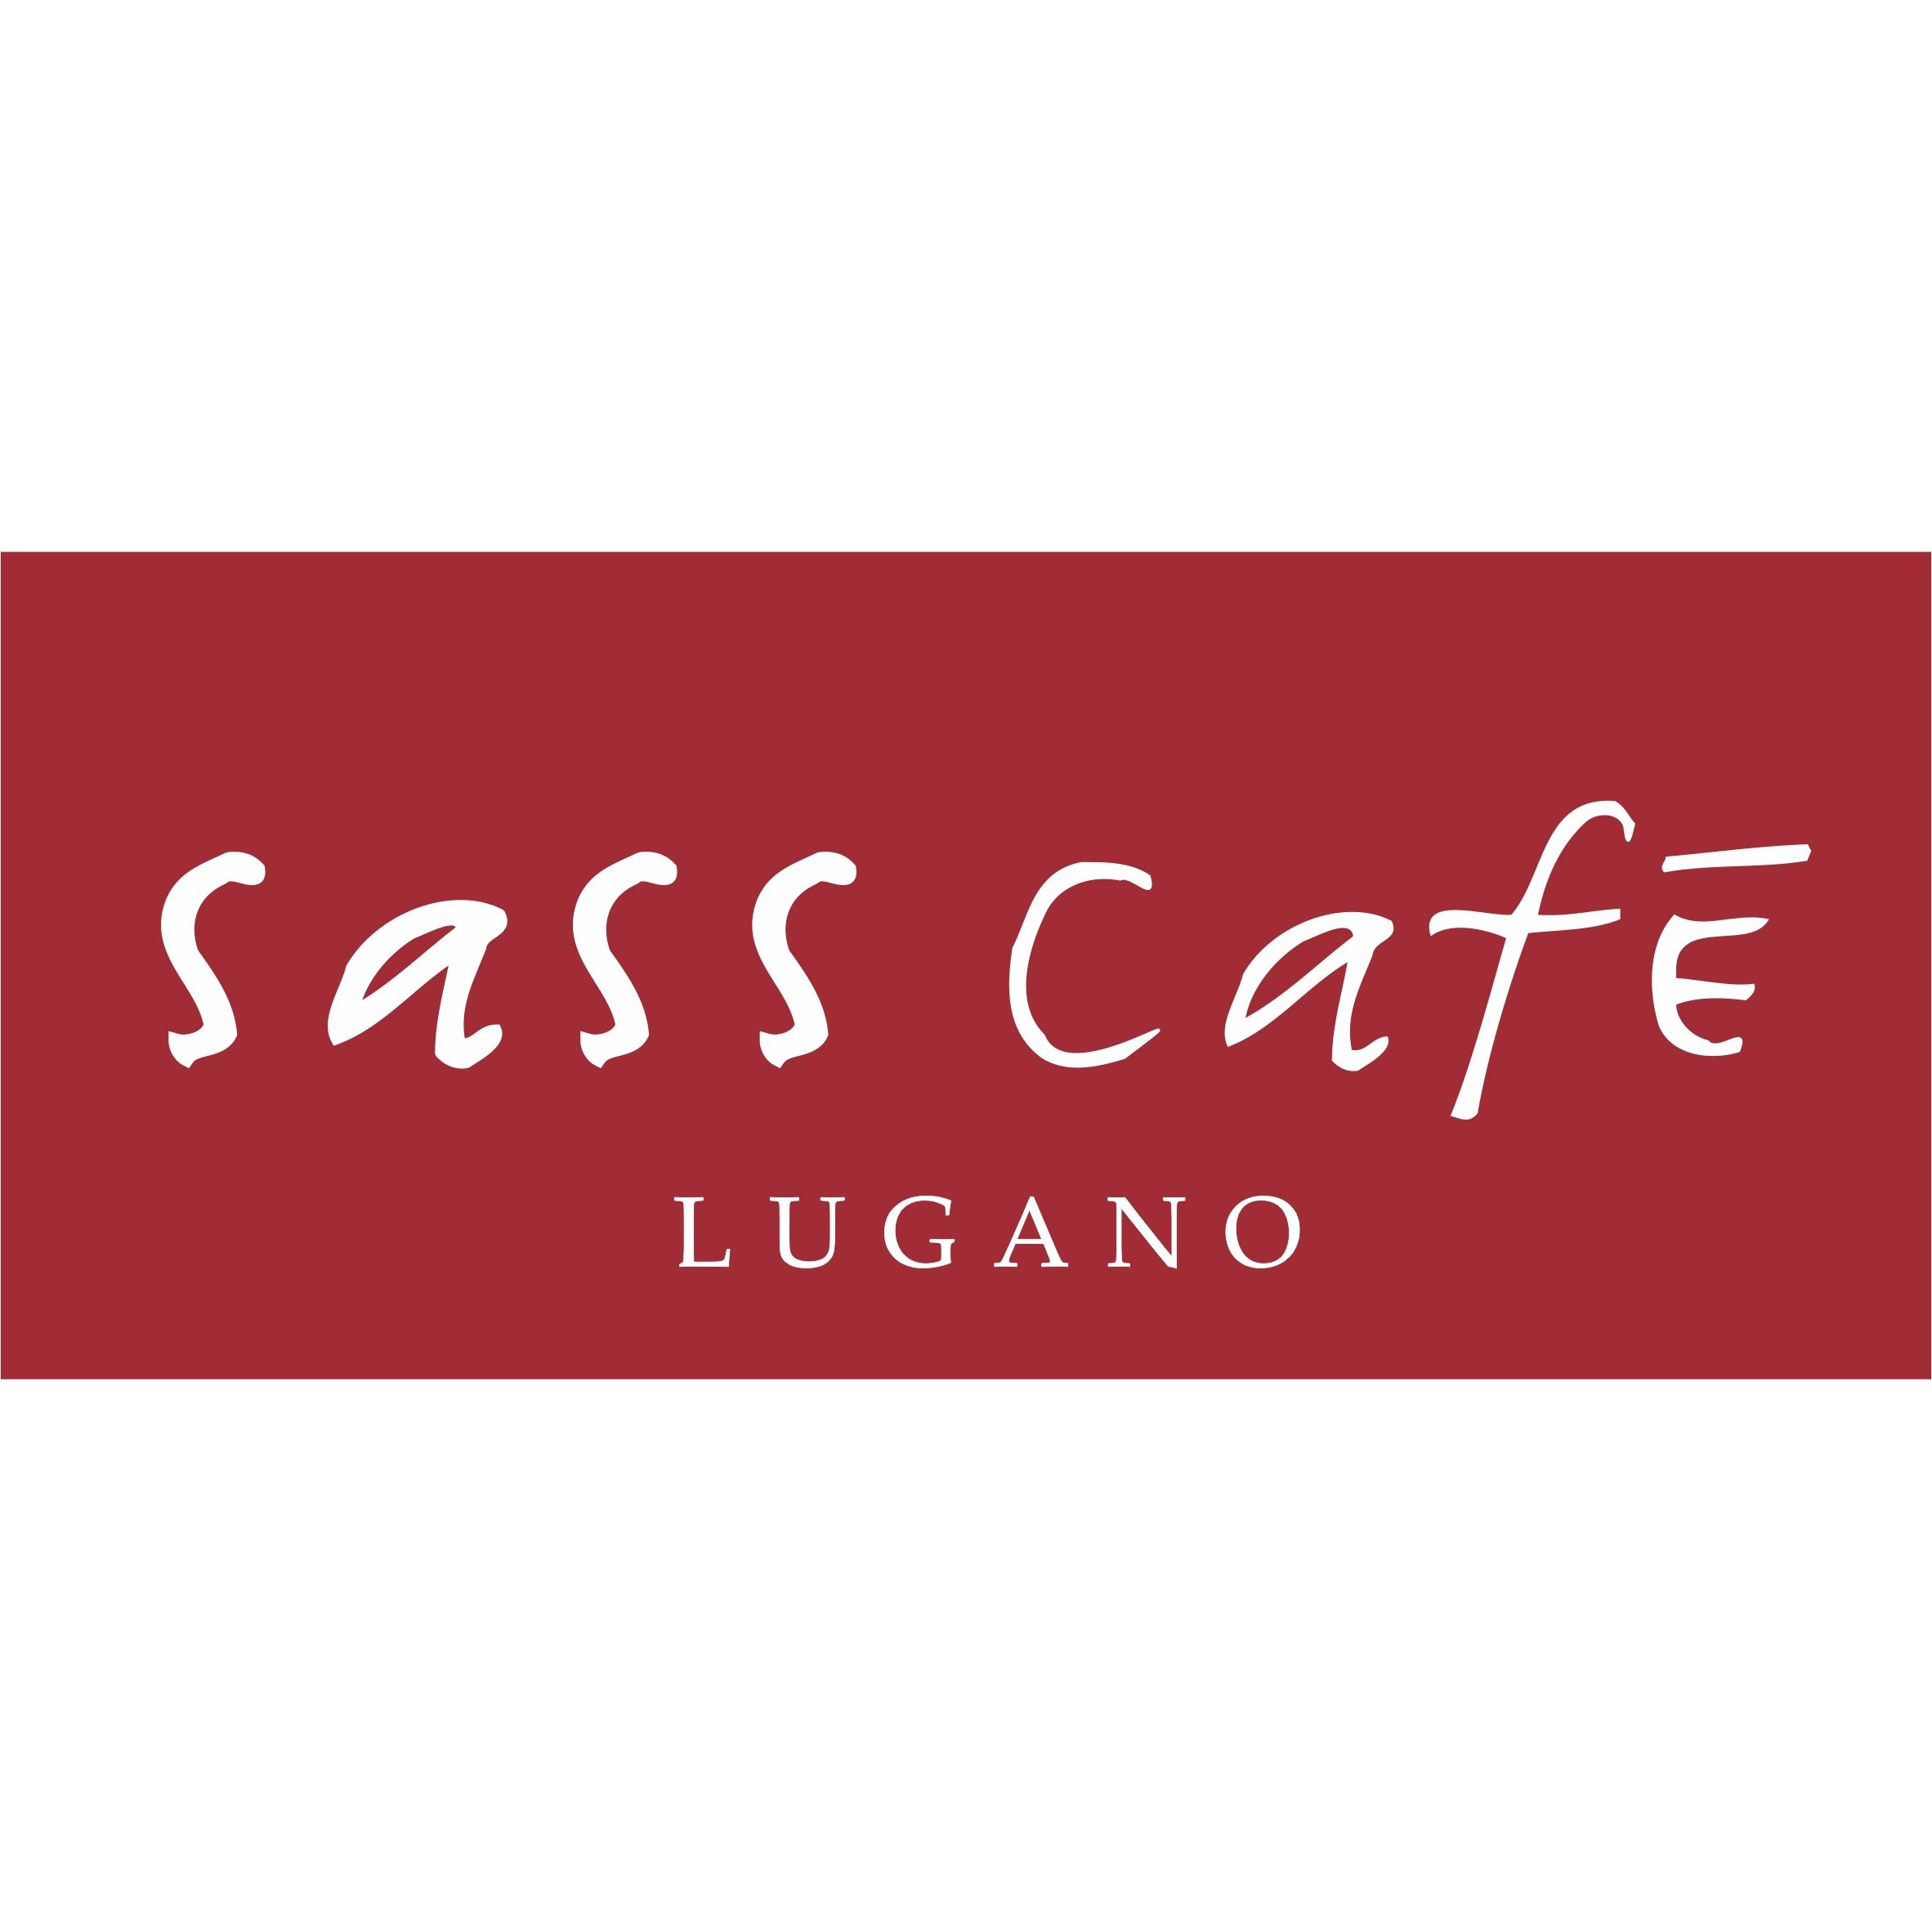 Sass cafè Vineria - Restaurant - Lugano - 091 922 21 83 Switzerland | ShowMeLocal.com